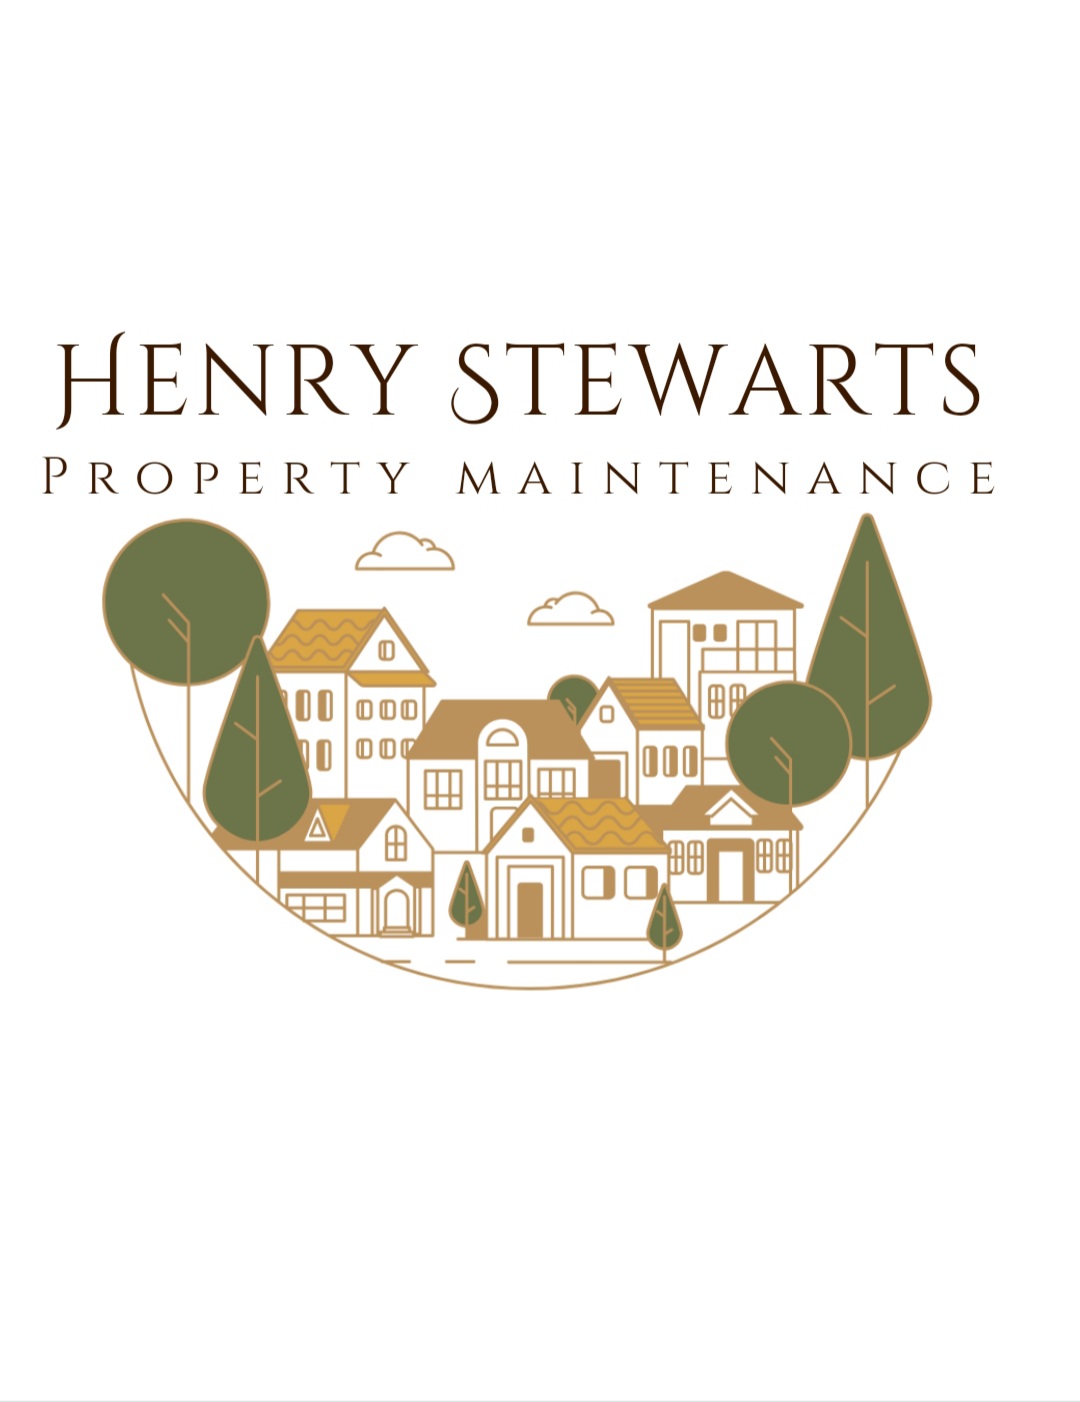 Main header - "Henry Stewart"